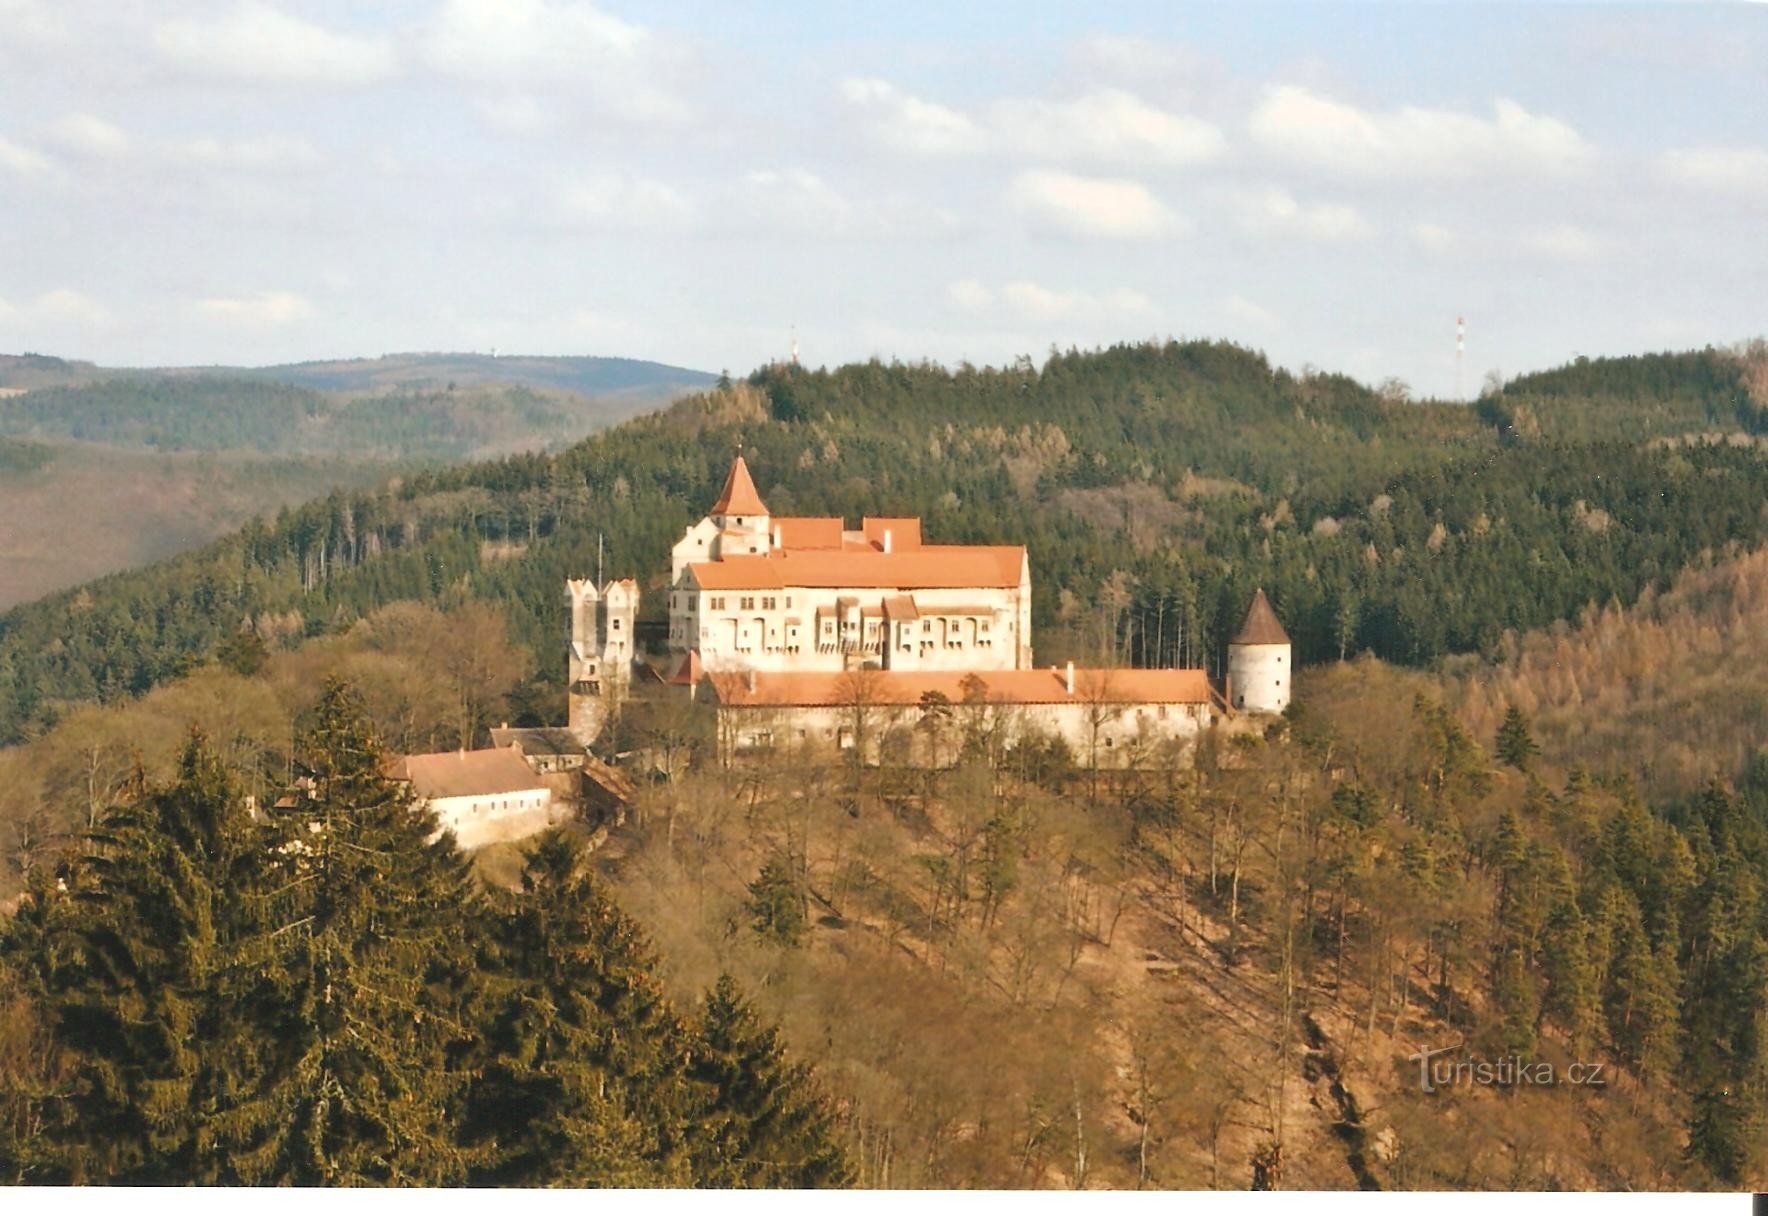 Marenčino loubí - udsigt over Pernštejn Slot i det sene efterår 2008